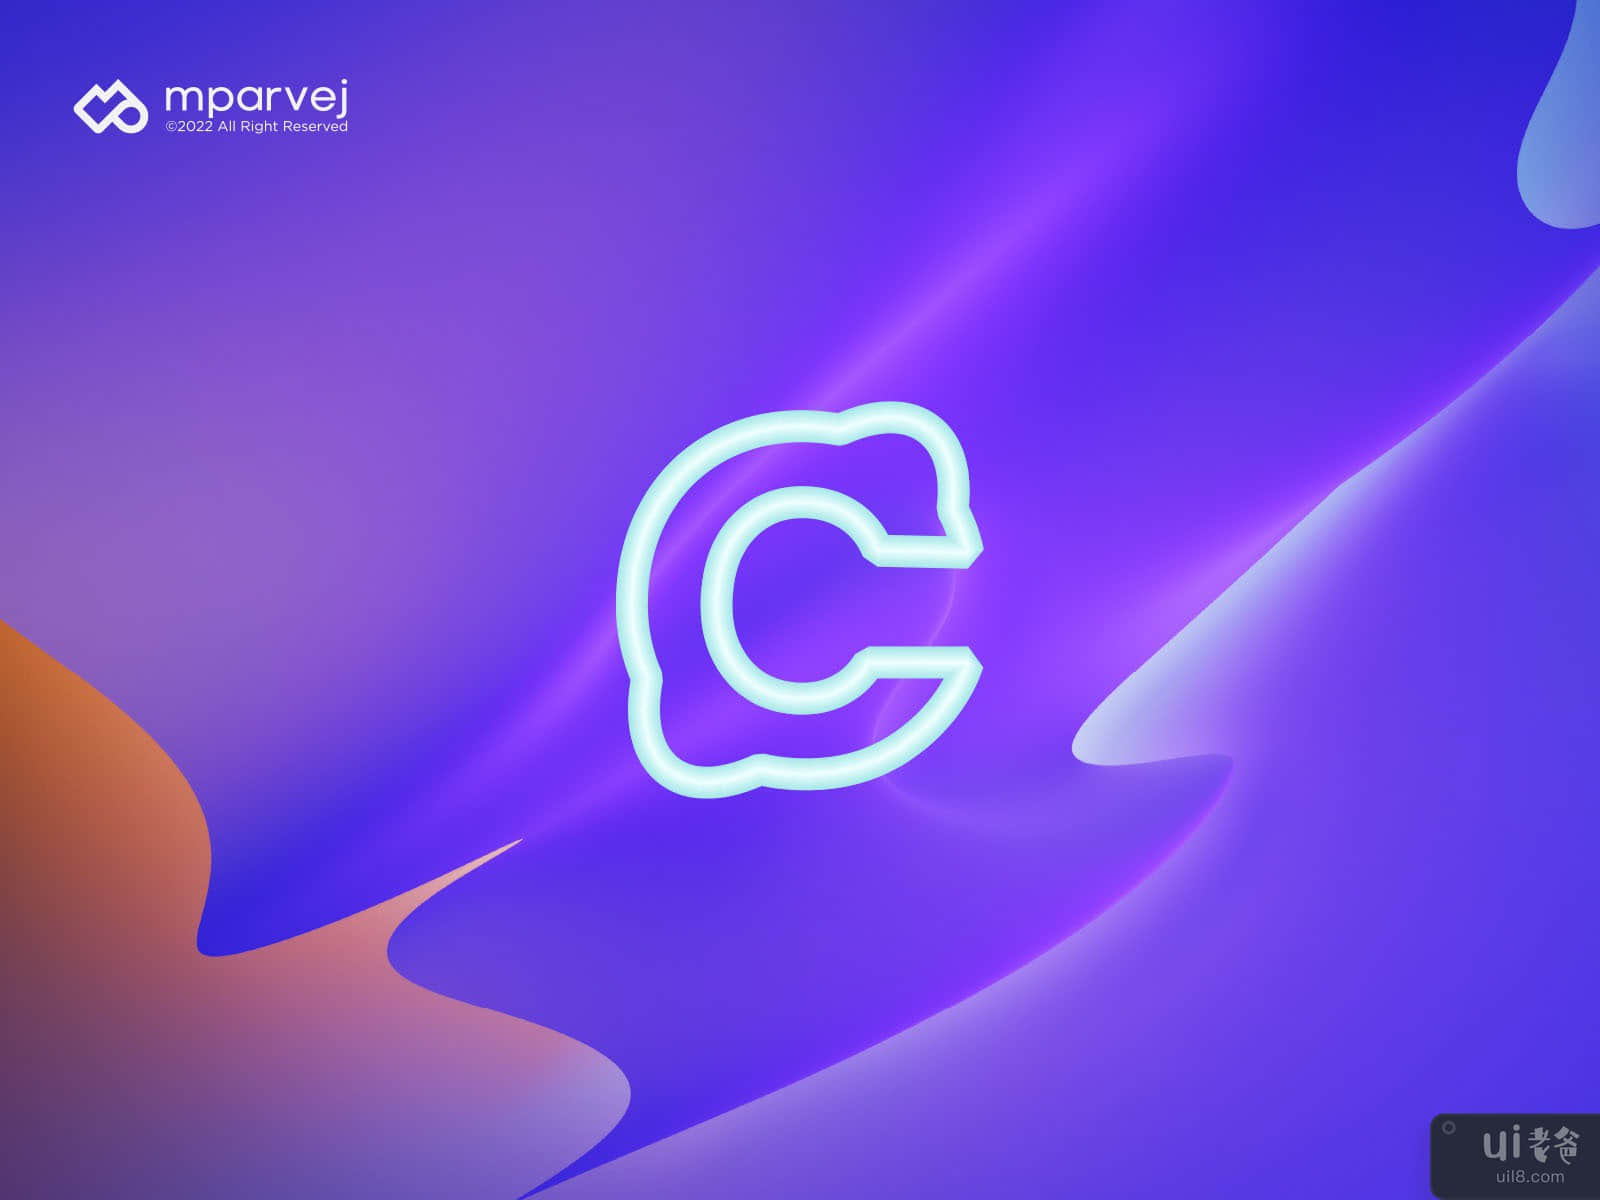 C Crypto logo